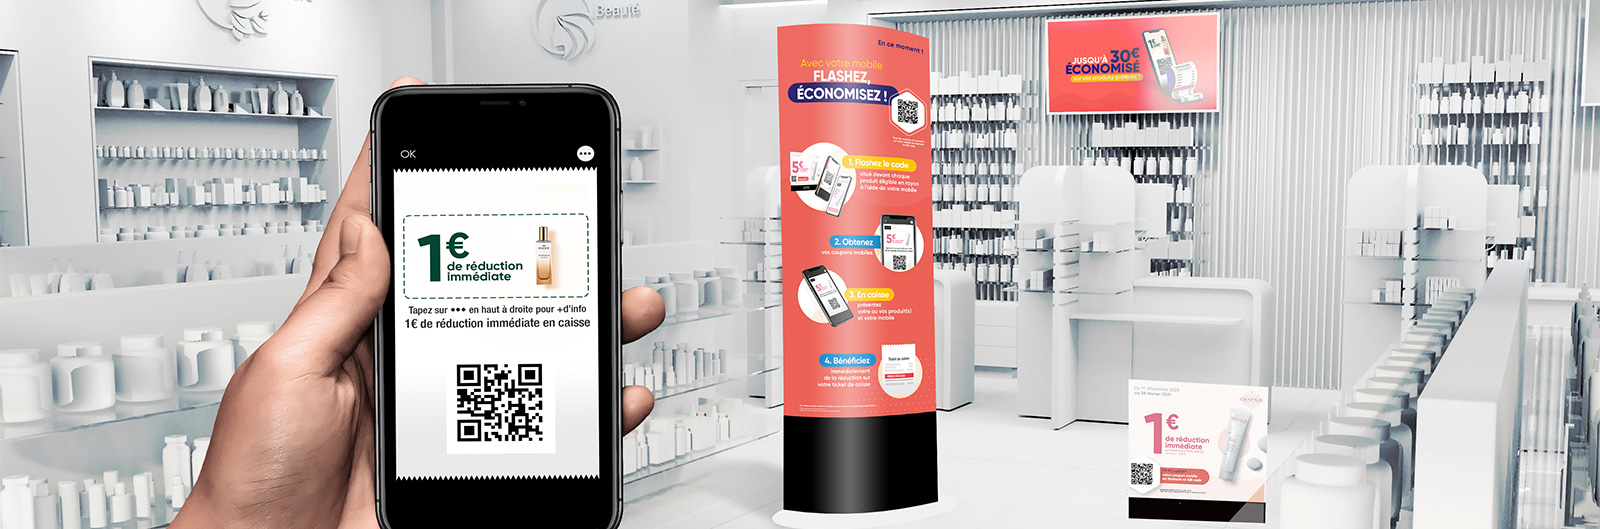 HighCo digitalise le bon de réduction immédiate et lance un coupon 100% mobile